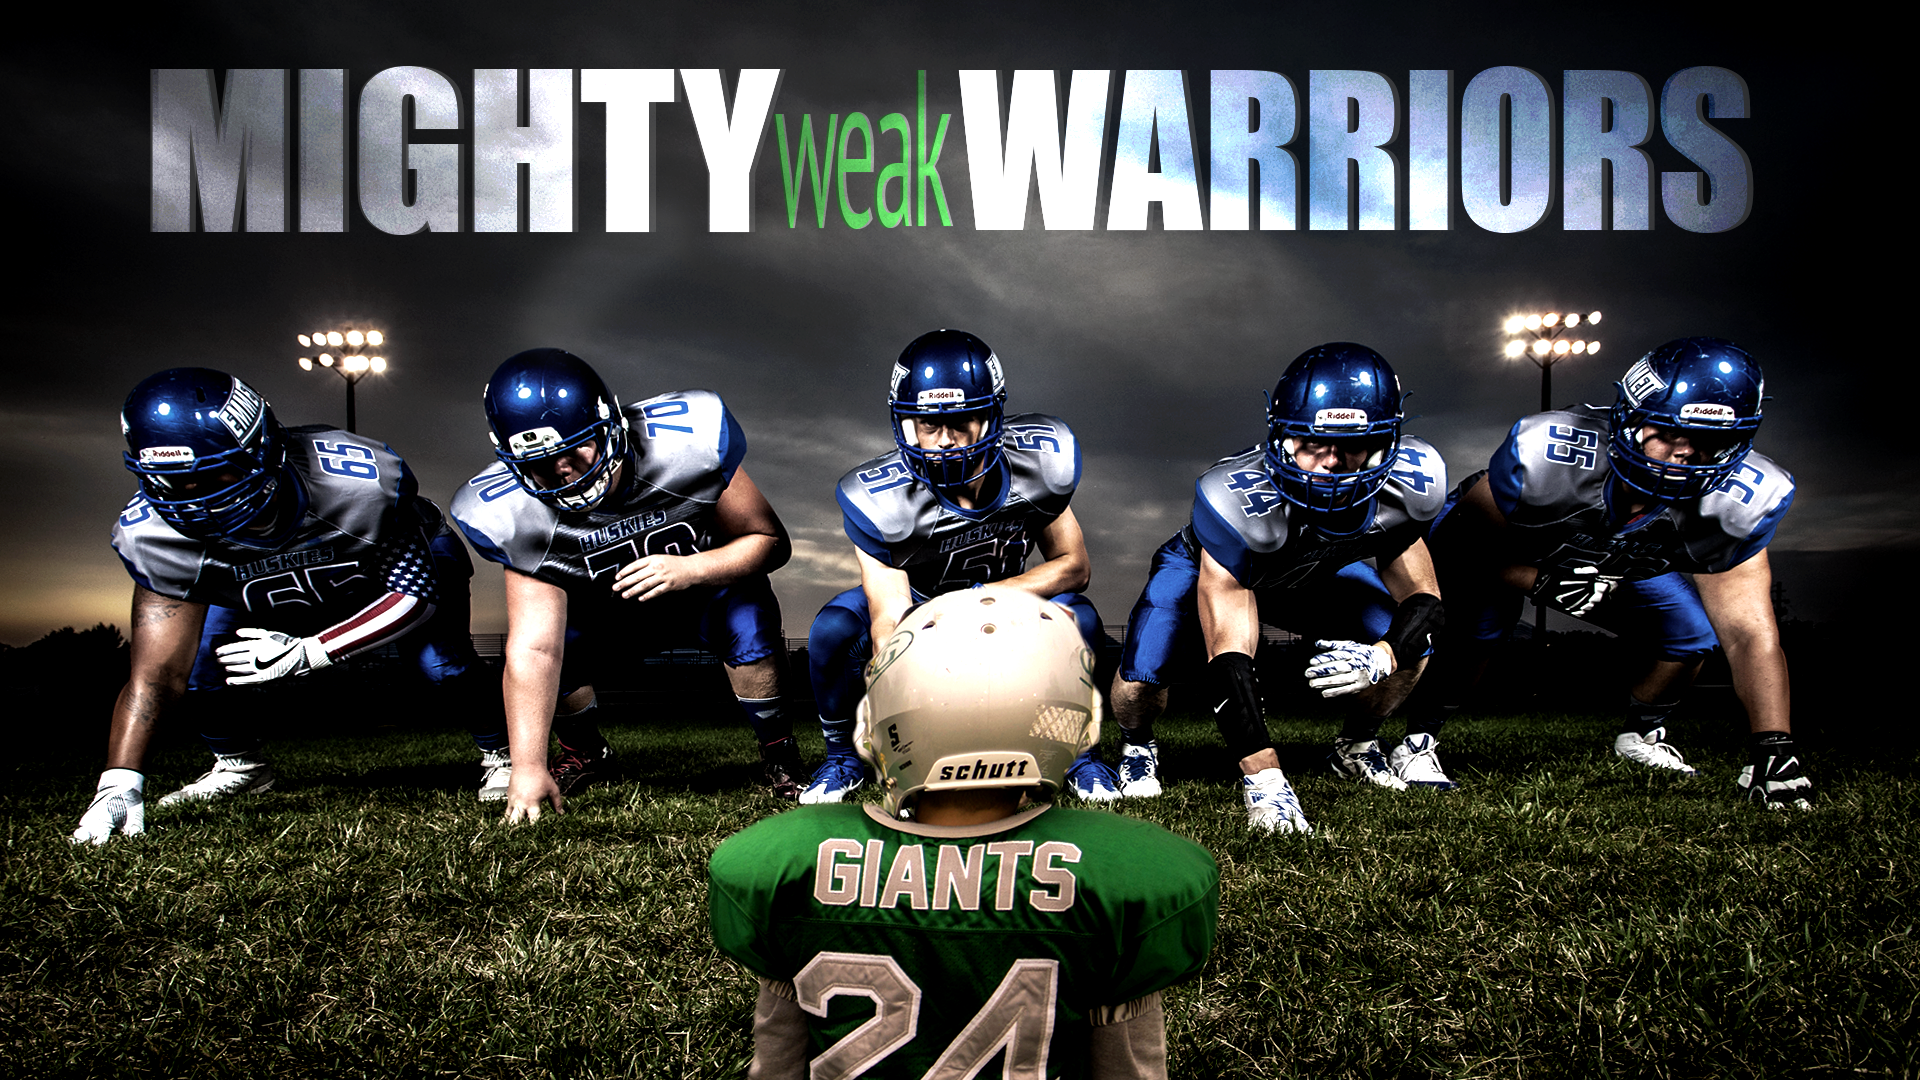 Mighty Weak Warriors